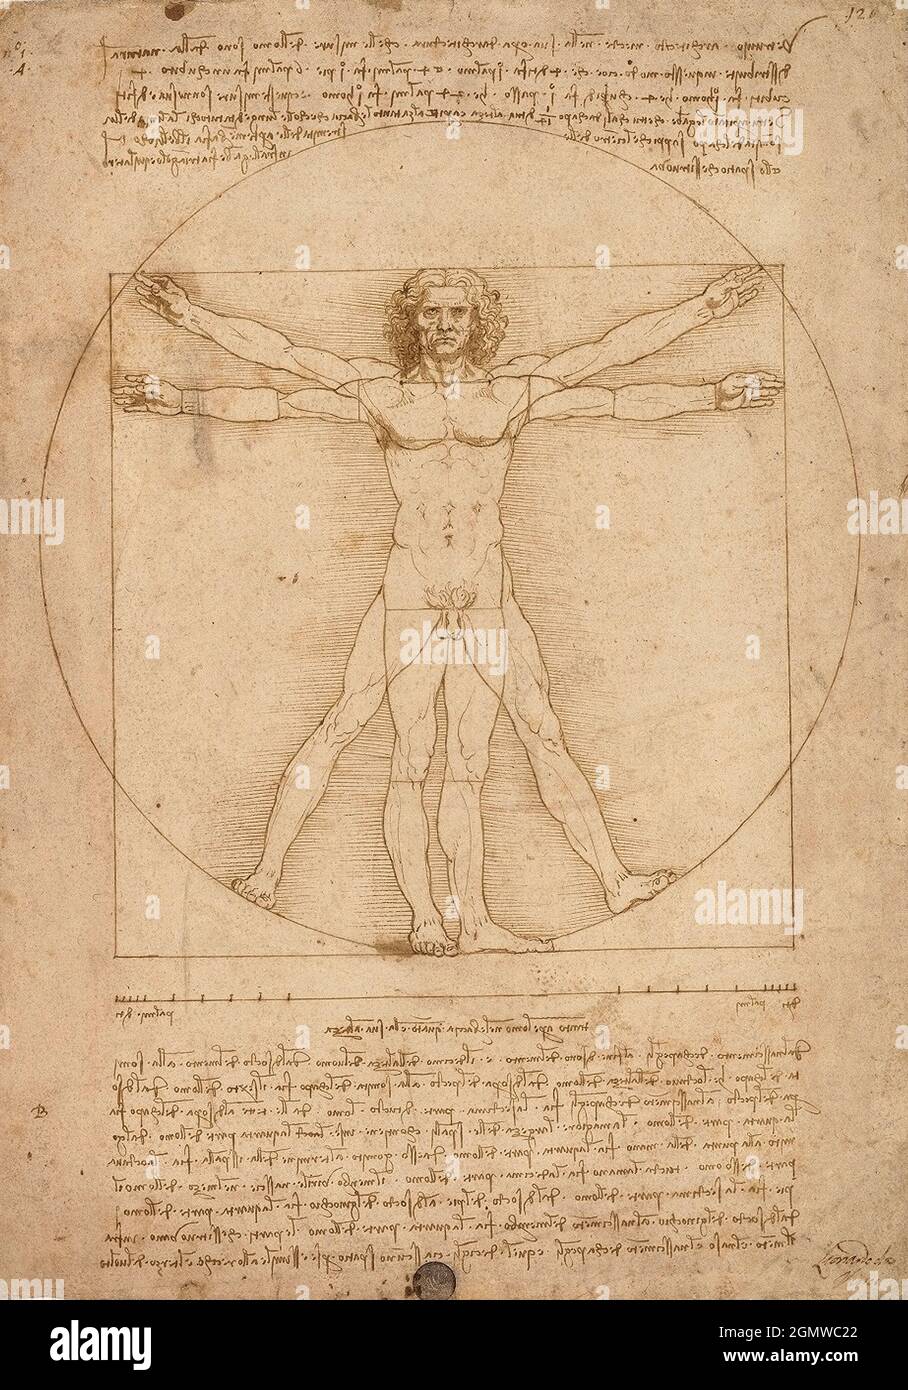 Uomo Vitruano de Leonardo Da Vinci 1490 -représentation des proportions idéales du corps humain, il tente de démontrer comment il peut être harmonieusement inscrit dans les deux figures 'parfaite' du cercle, qui symbolise le ciel, la perfection divine, et du carré, qui symbolise la Terre. Banque D'Images